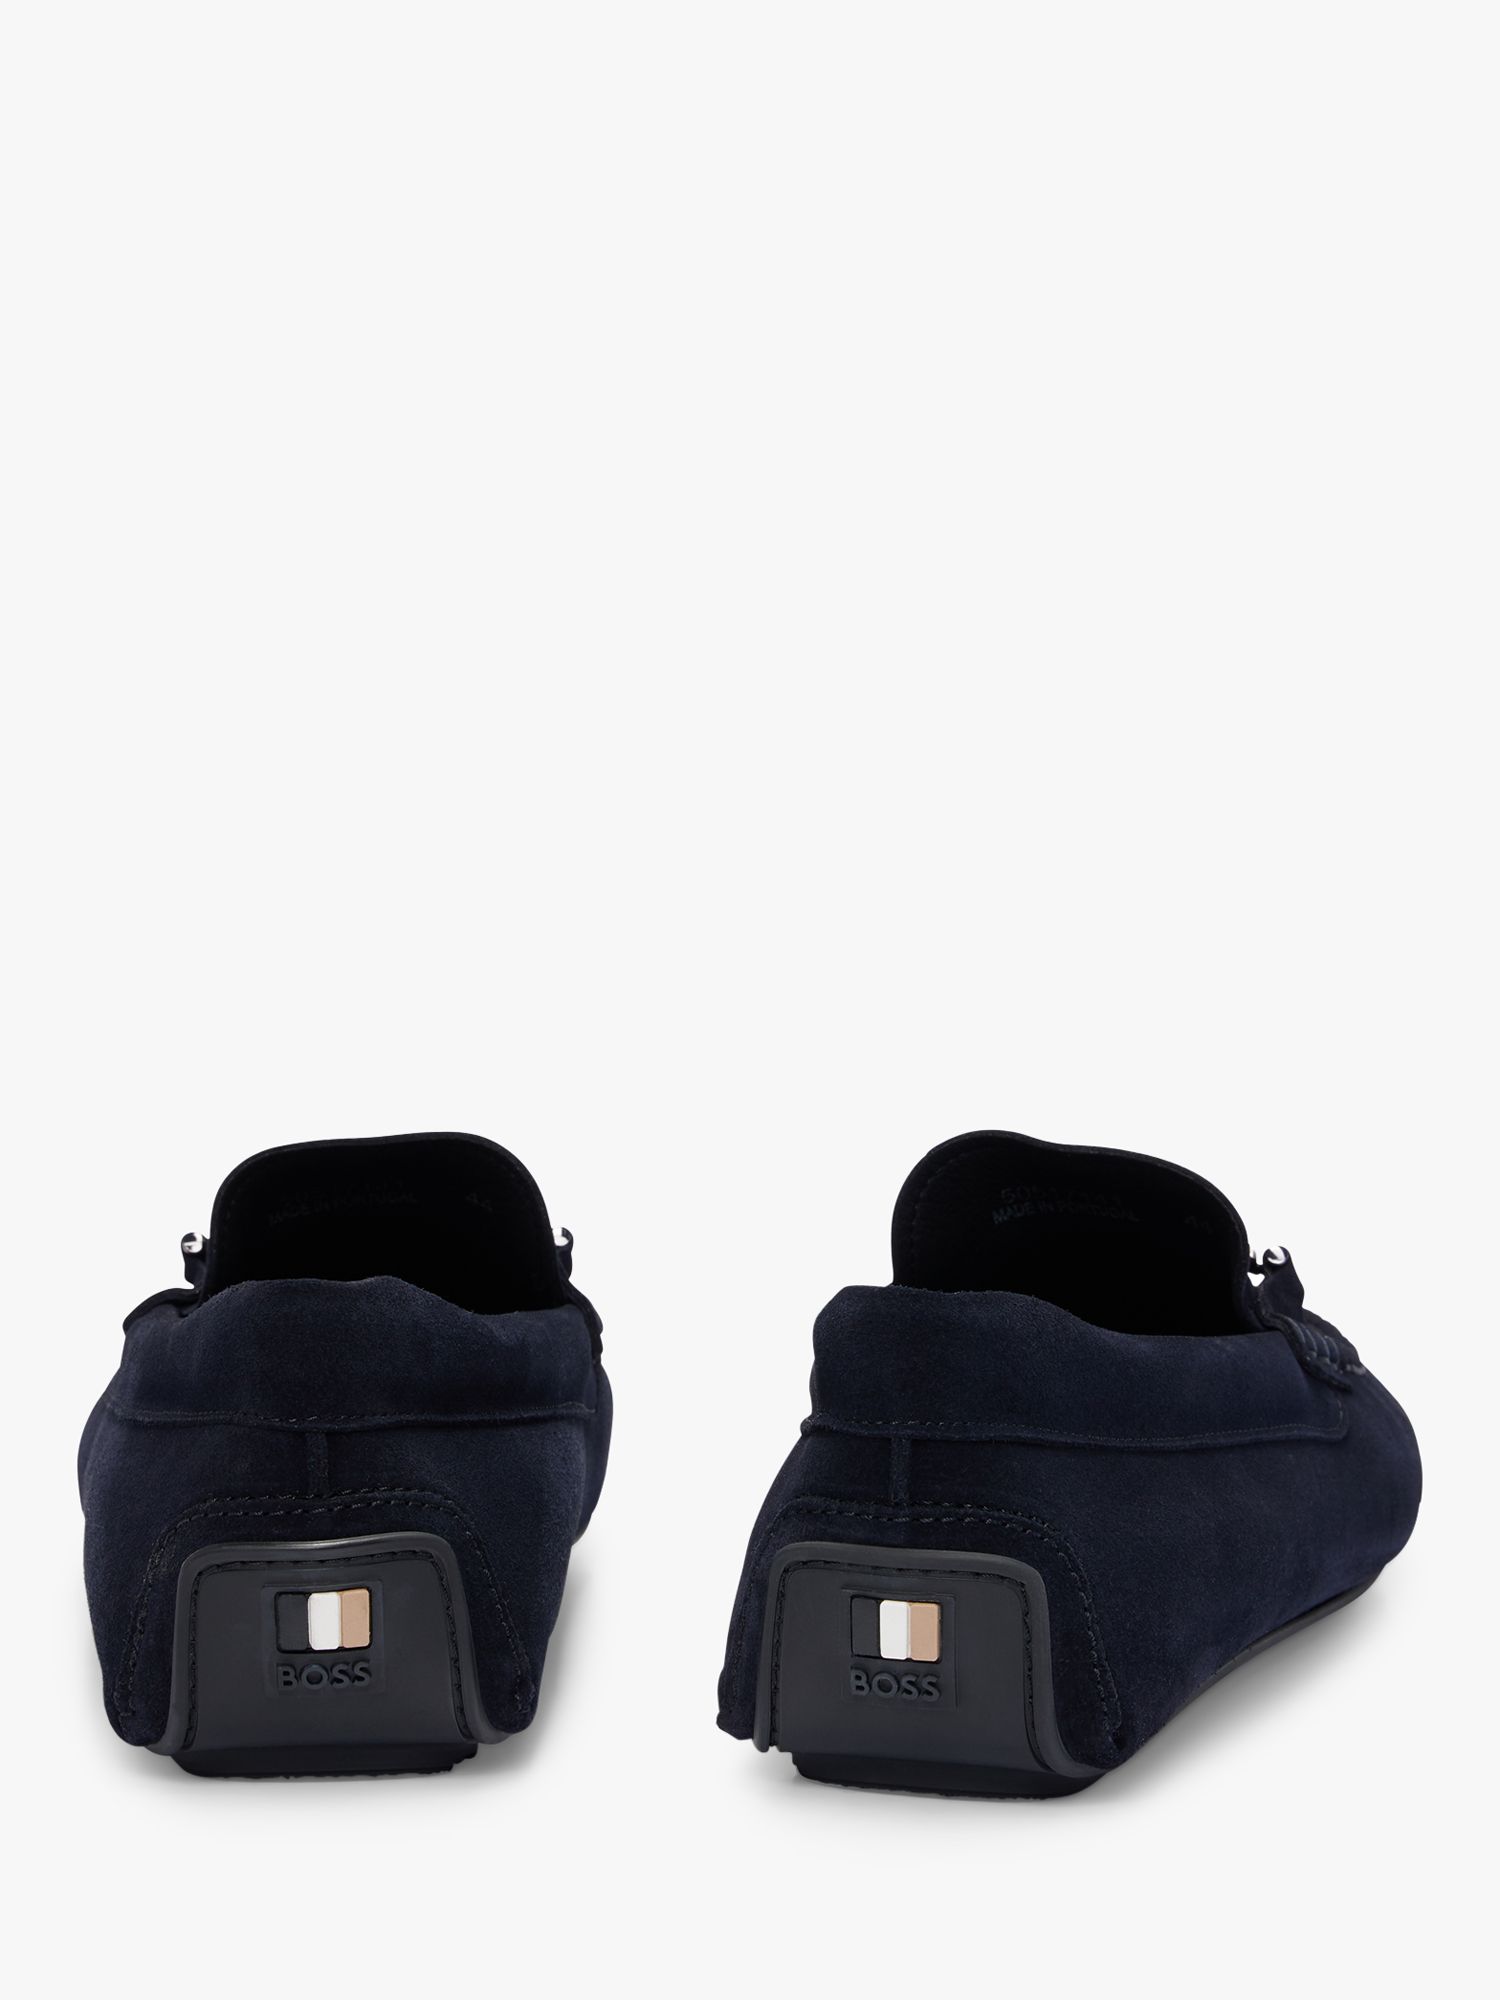 BOSS Noel Leather Loafers, Dark Blue, 8